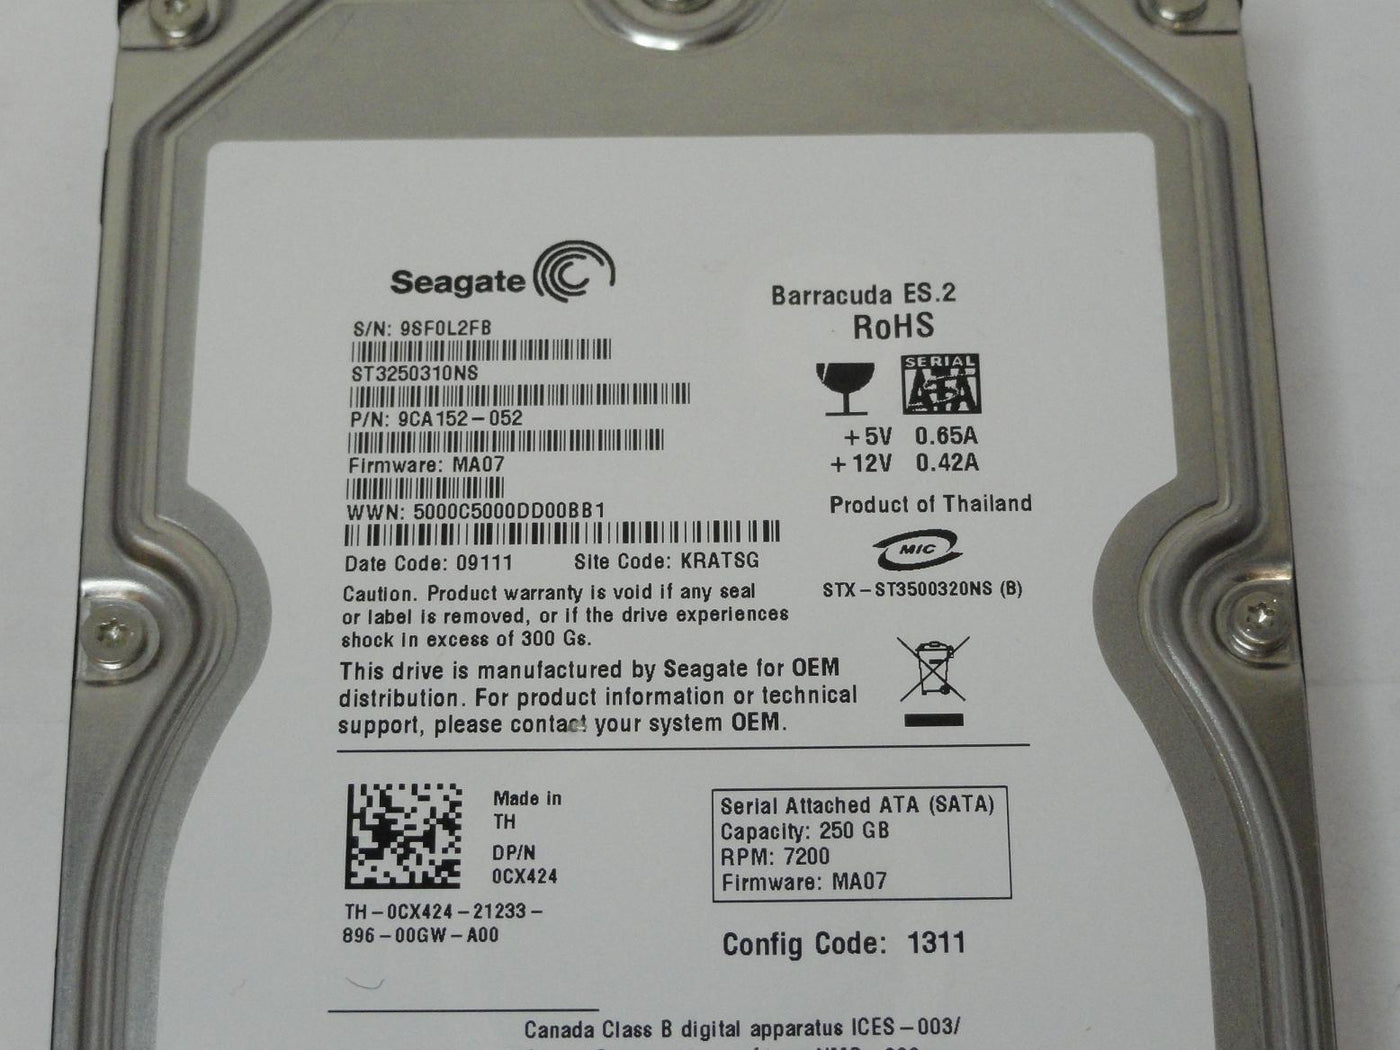 PR26164_9CA152-052_Seagate Dell 250GB SATA 7200rpm 3.5in HDD - Image3